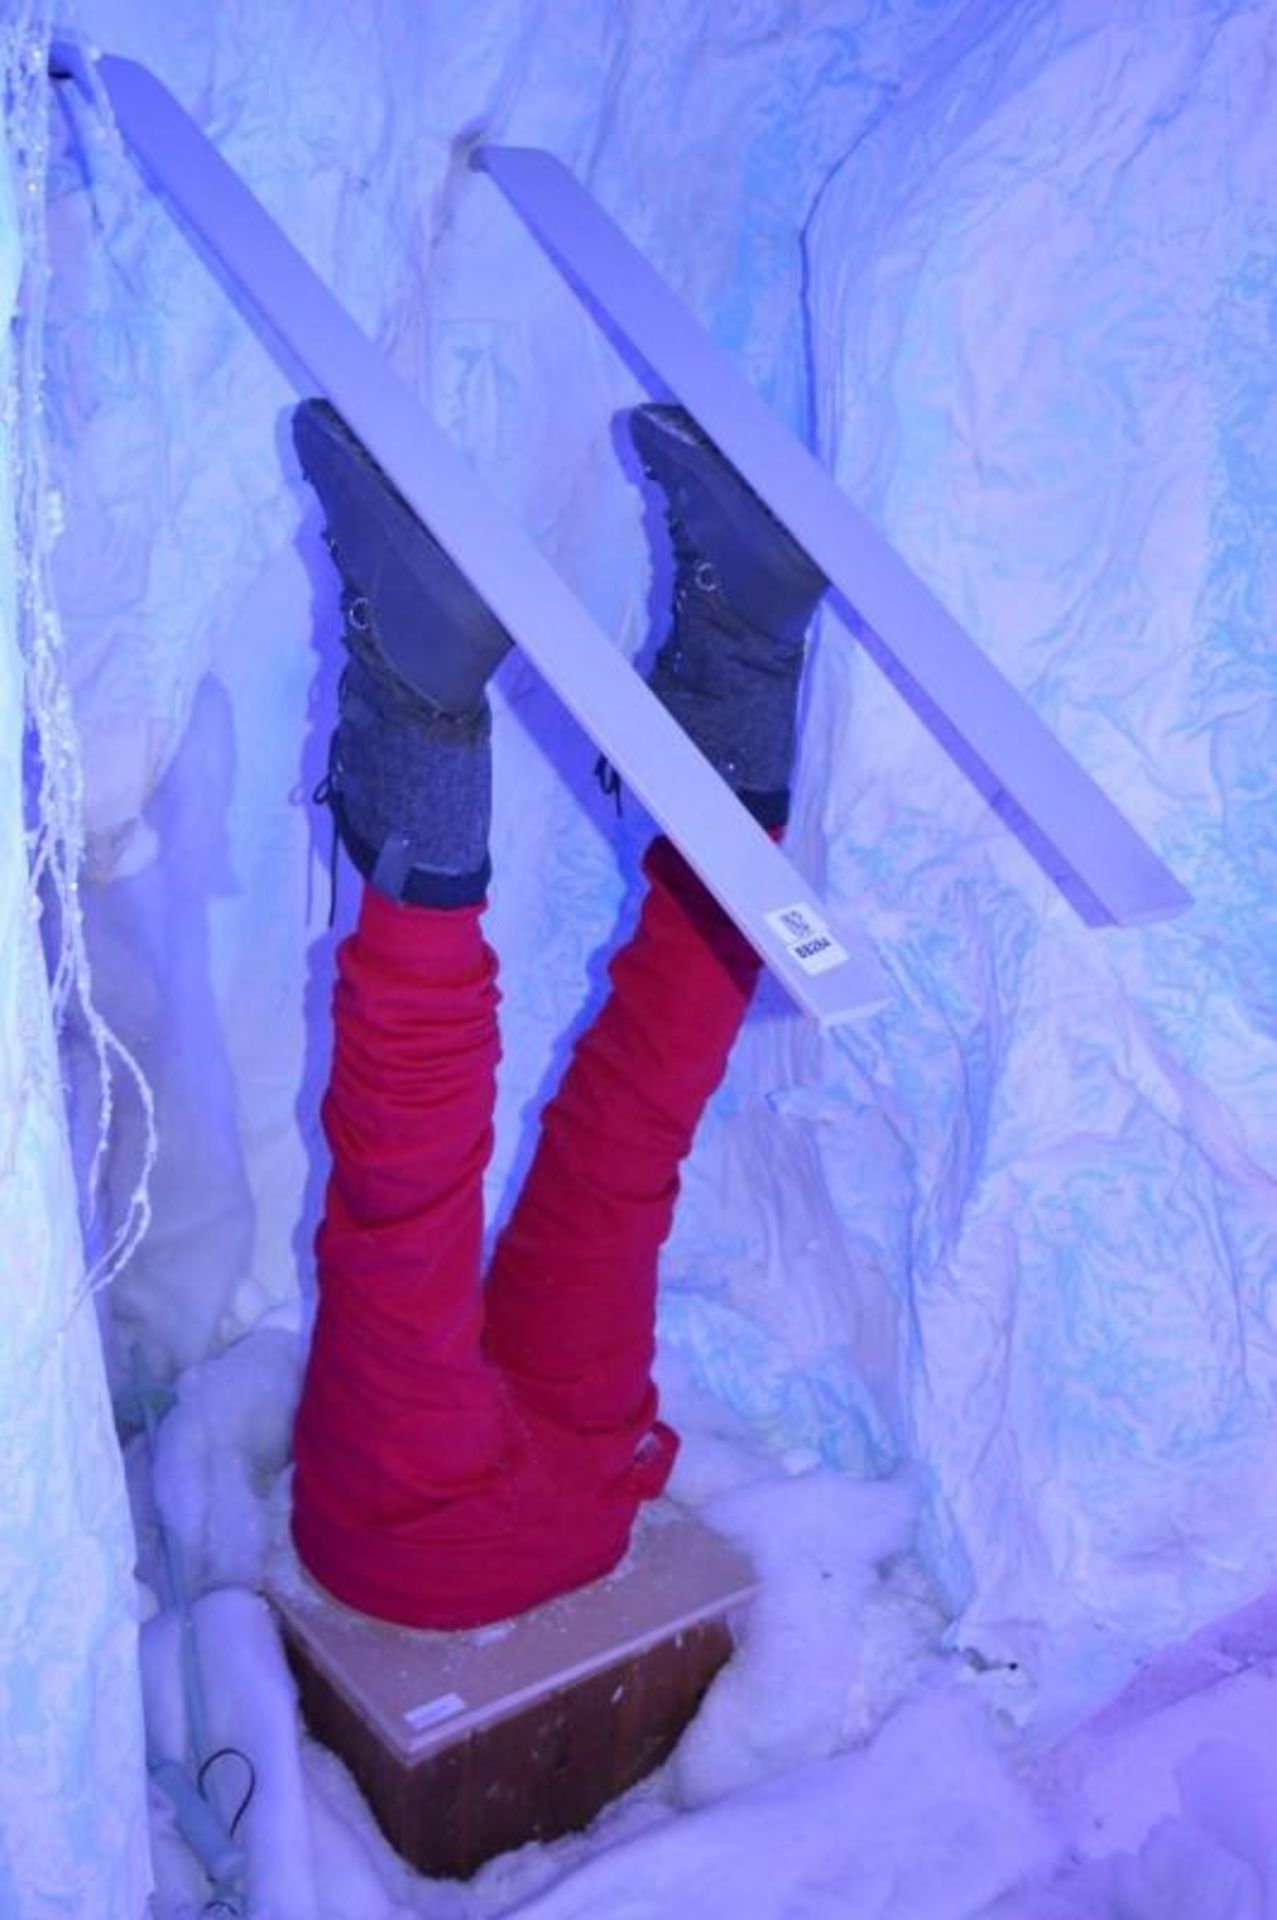 1 x Pair of Upside Down Skiers Legs on Wooden Base - Depicting Stuck in Snow Ski Scene